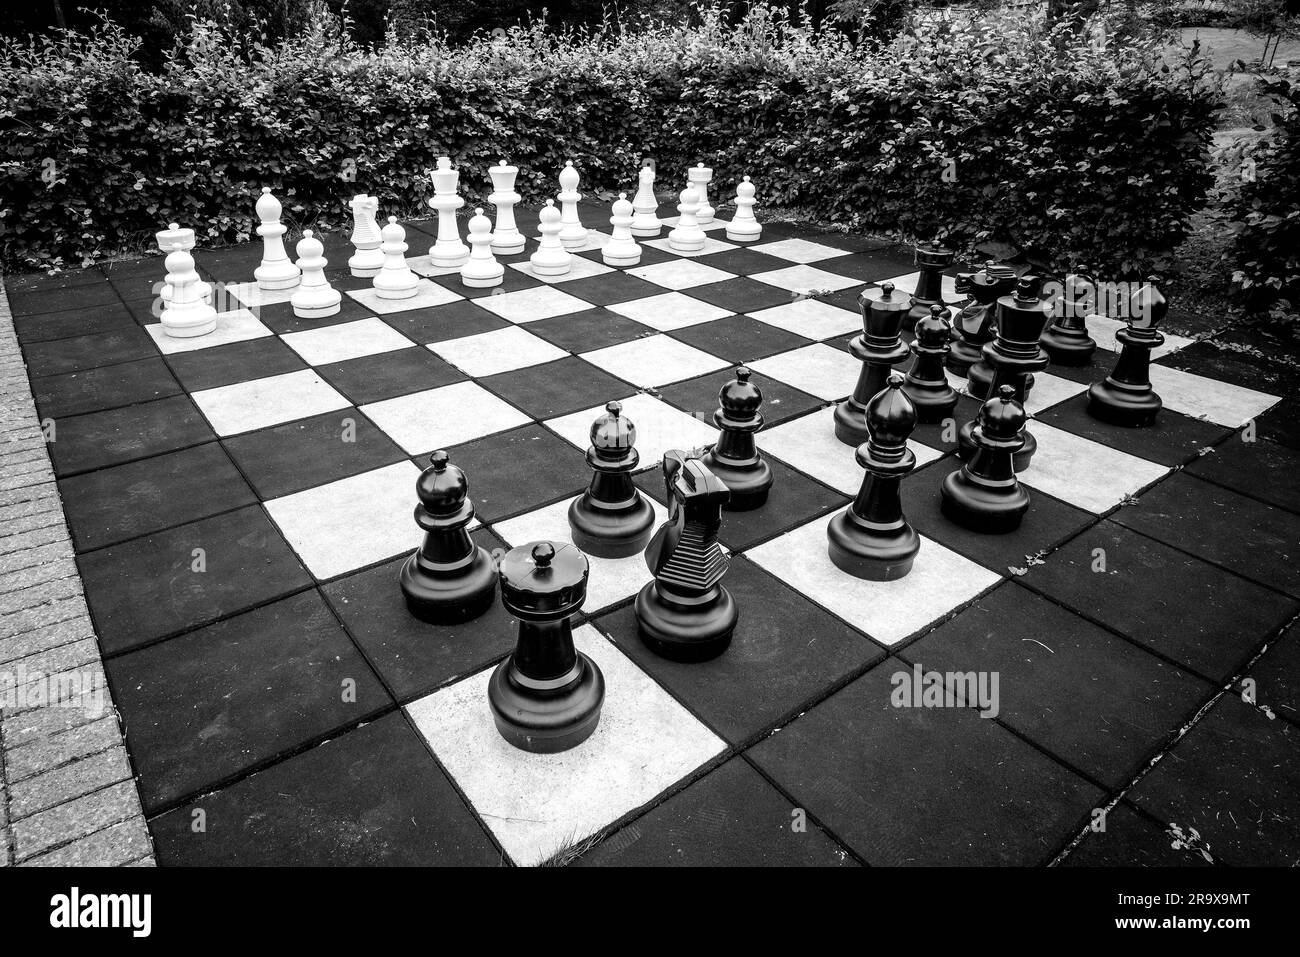 Schach Spiel mit großen Stücken in der freien Version des klassischen Spiels in den Farben Schwarz und Weiß Stockfoto